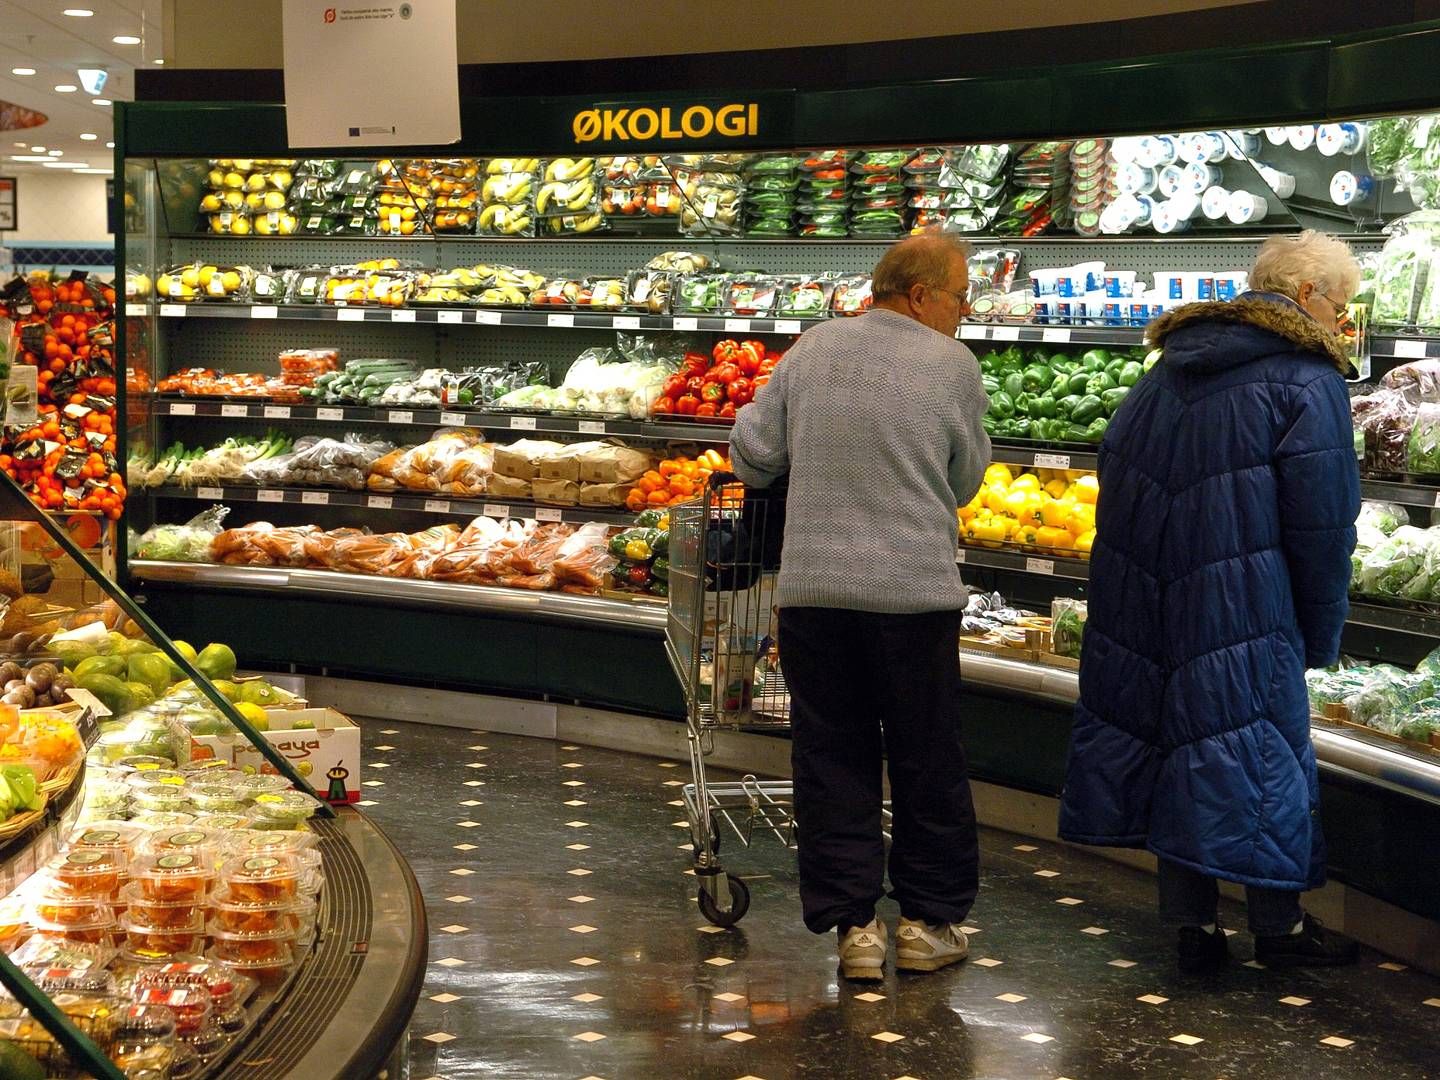 På landsplan falder salget af økologiske varer, det gælder dog ikke i Dagrofa. | Foto: Bo Svane